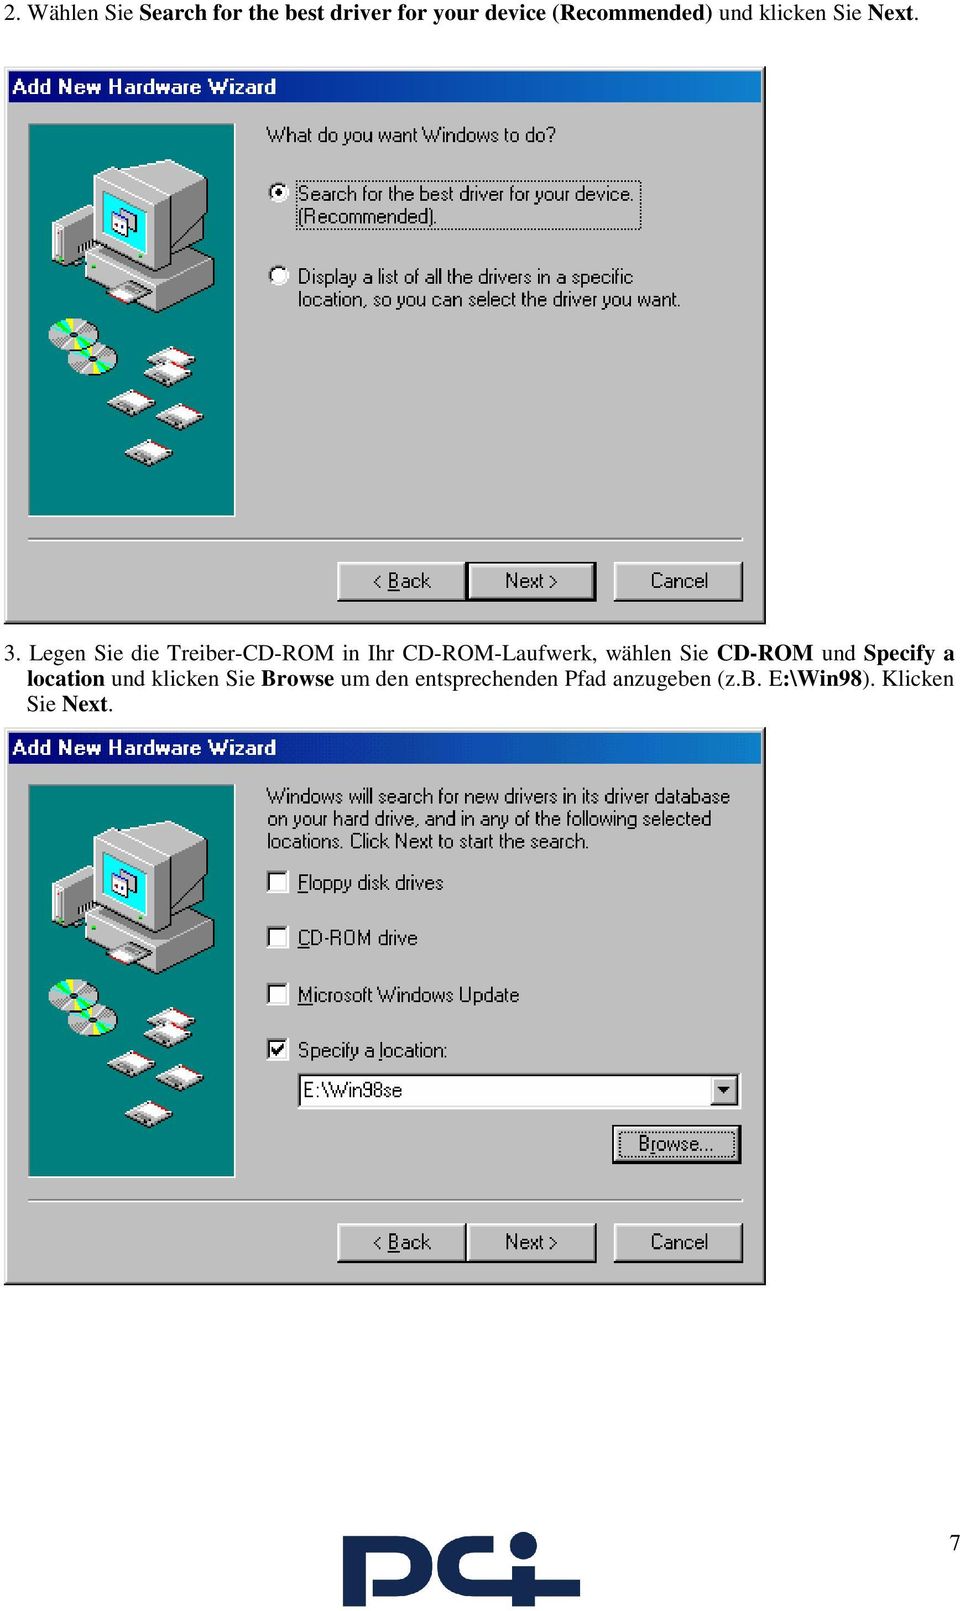 Legen Sie die Treiber-CD-ROM in Ihr CD-ROM-Laufwerk, wählen Sie CD-ROM